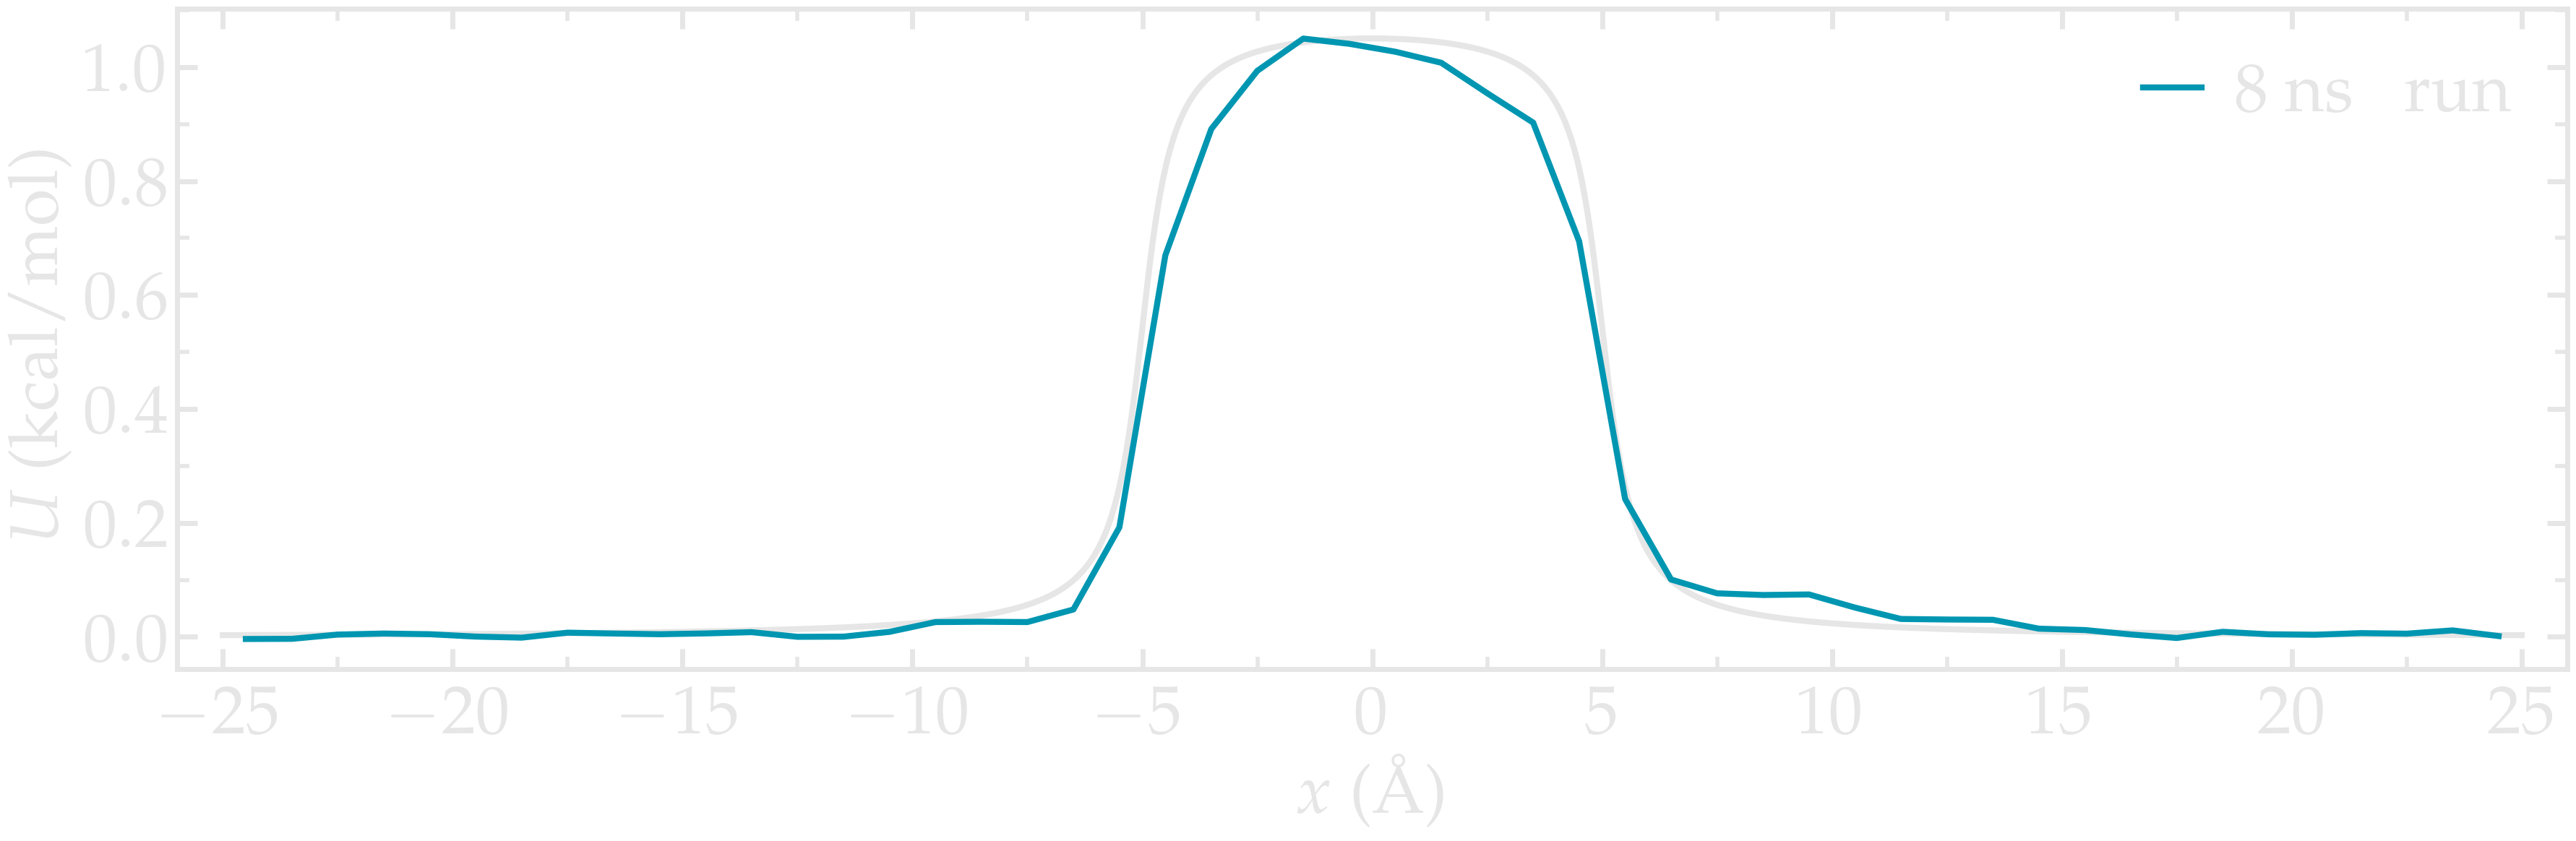 Averaged density profile